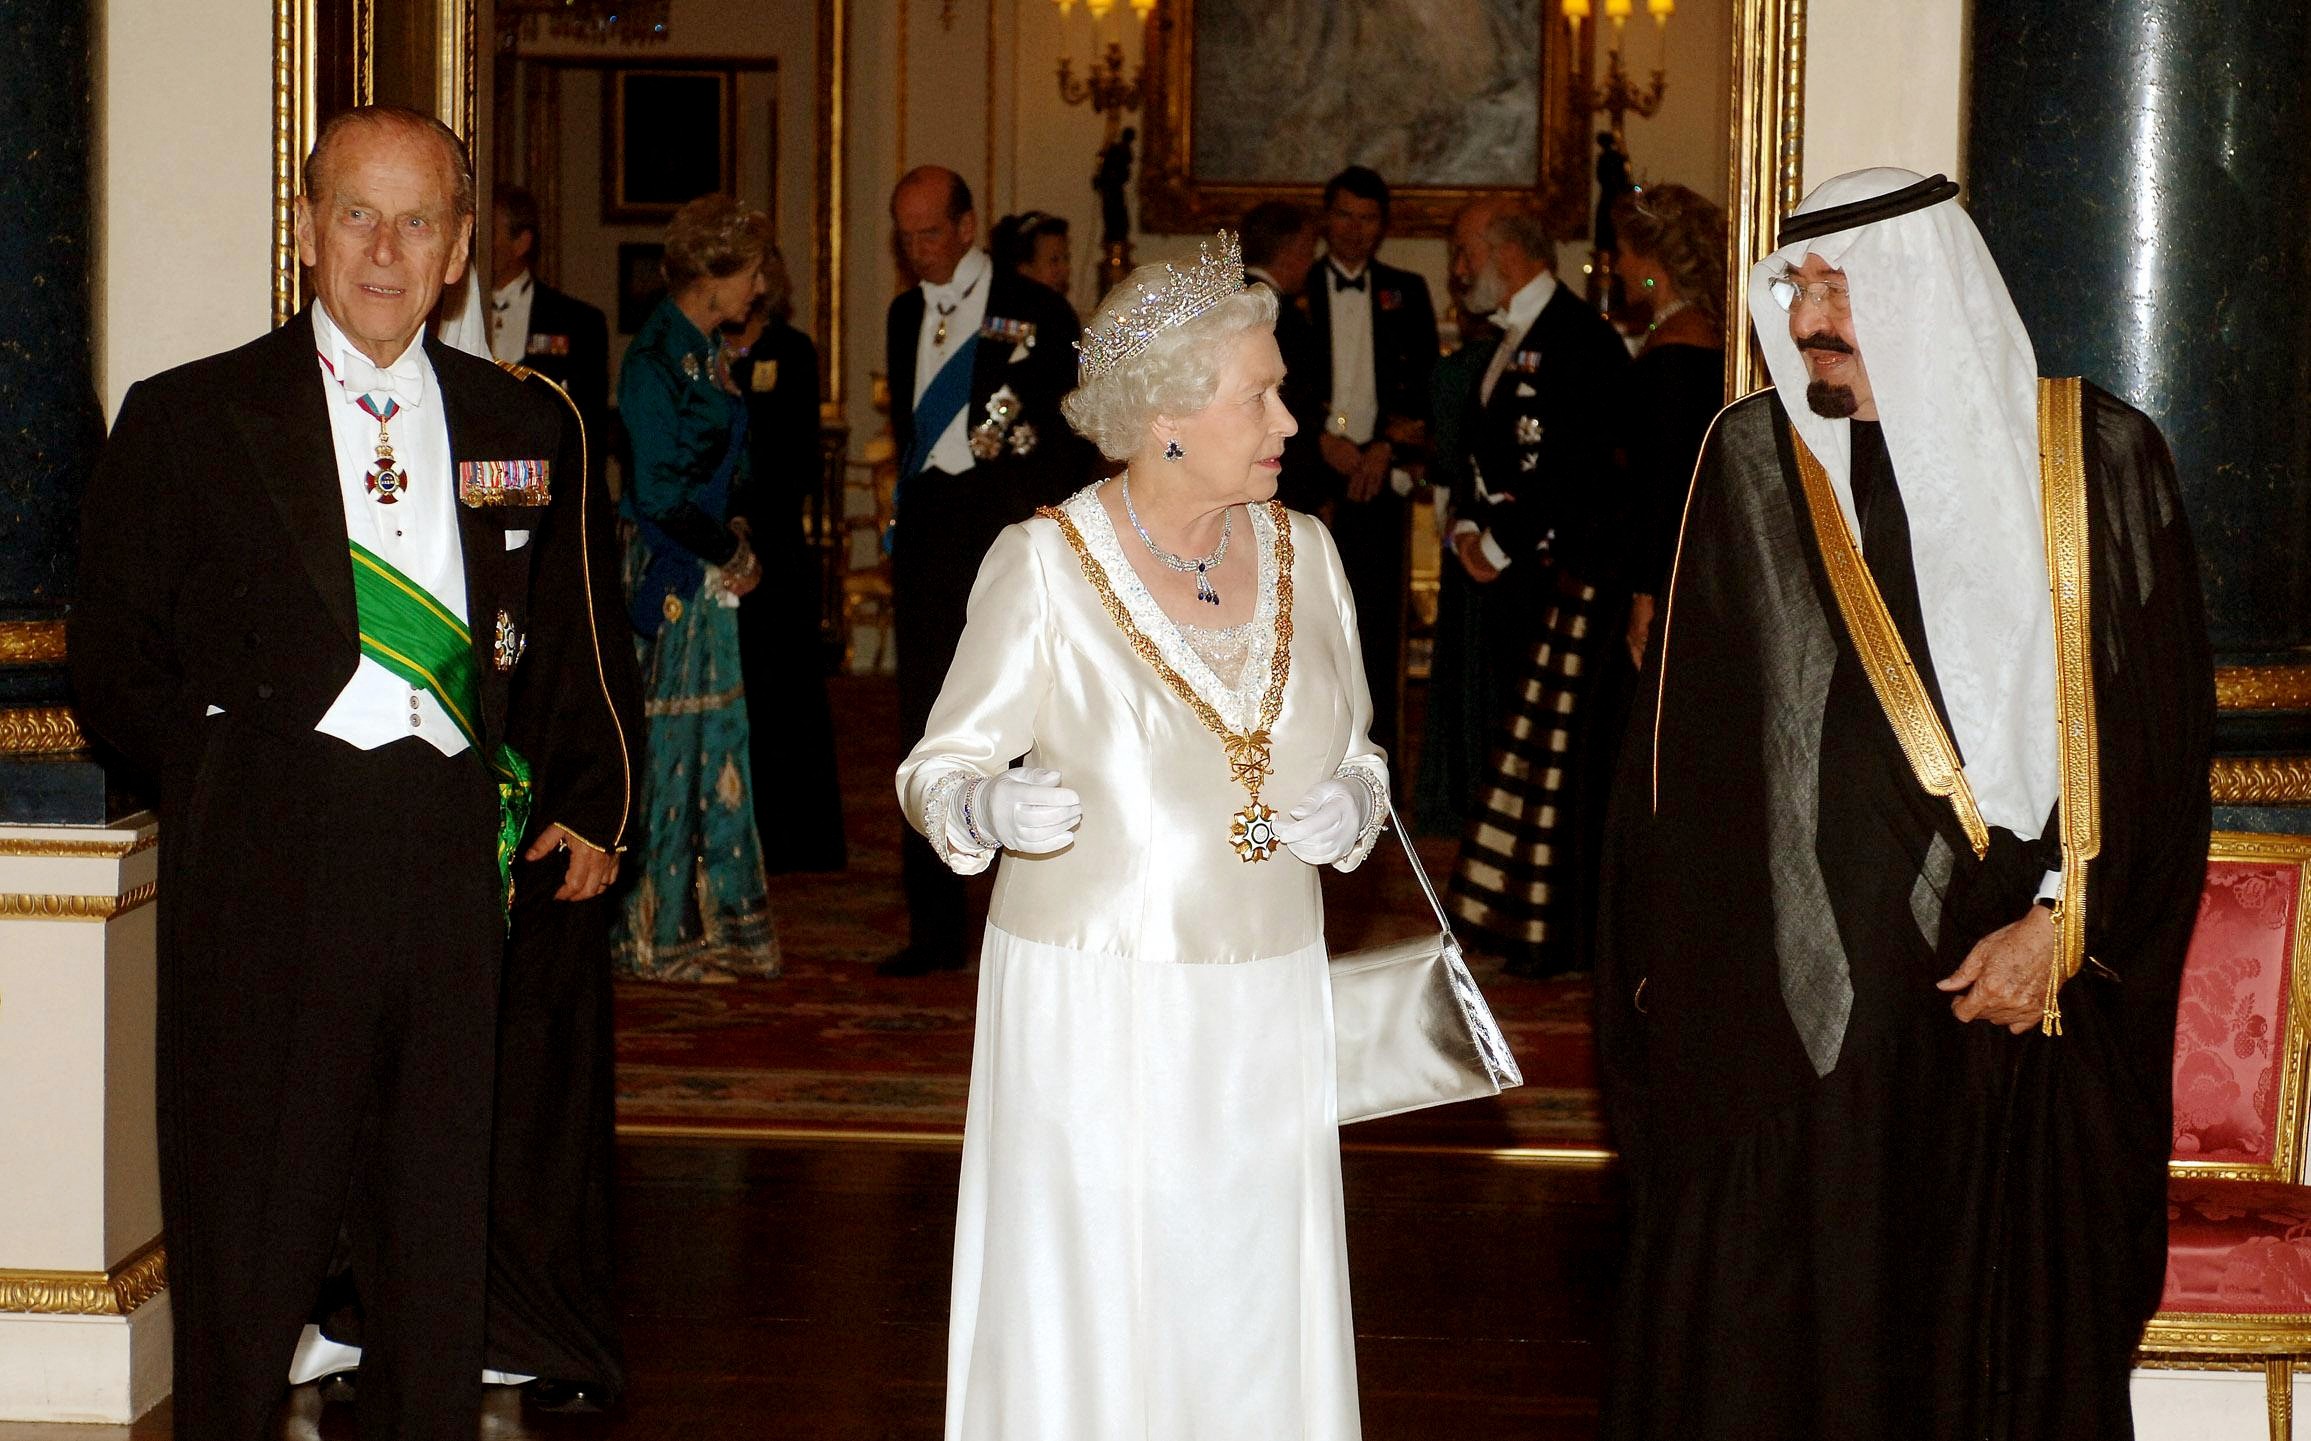 Le roi Abdallah d’Arabie saoudite s’entretient avec la reine Elizabeth II et le duc d’Édimbourg, au palais de Buckingham, le 30 octobre 2007 (AFP)